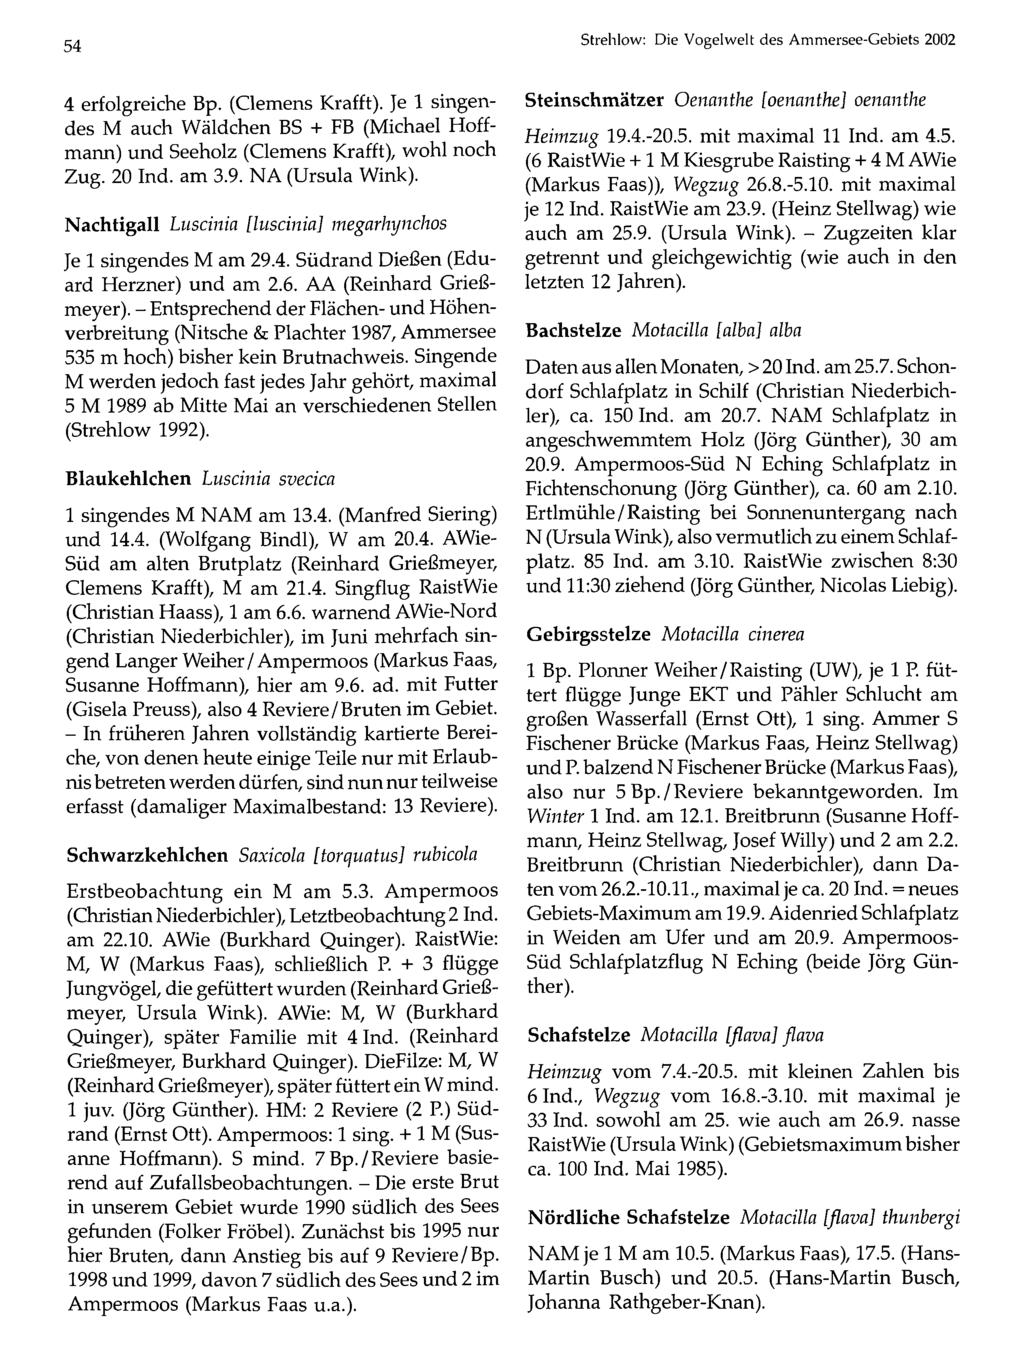 54 Ornithologische Gesellschaft Bayern, download unter Strehlow: www.biologiezentrum.at Die Vogelwelt des Ammersee-Gebiets 2002 4 erfolgreiche Bp. (Clemens Krafft).